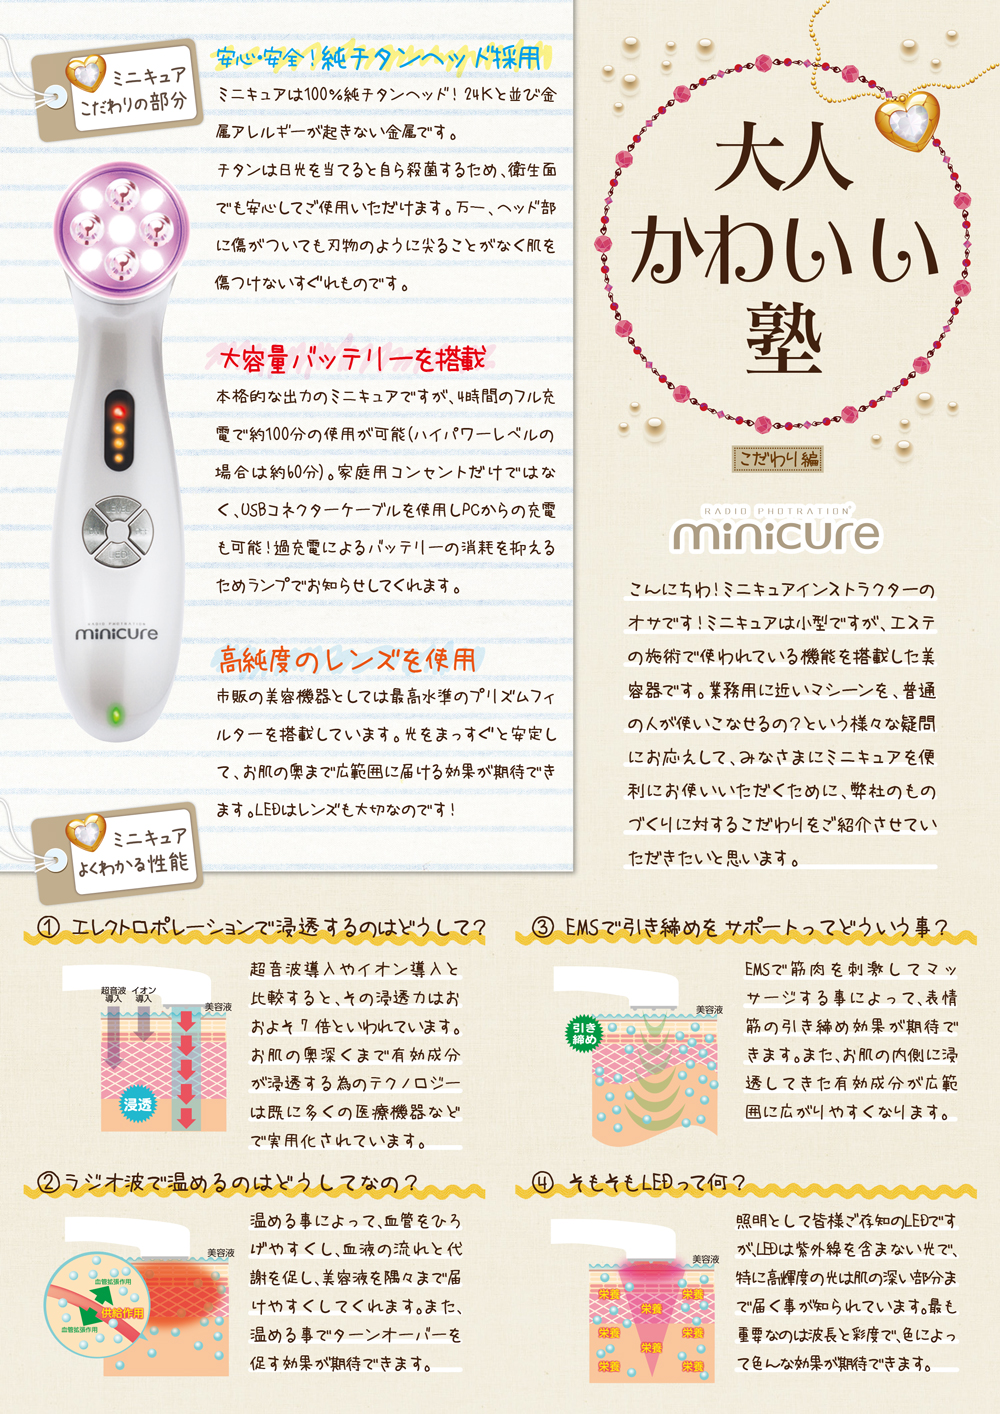 ミニキュア minicure 美顔器 正規品 - 美容/健康